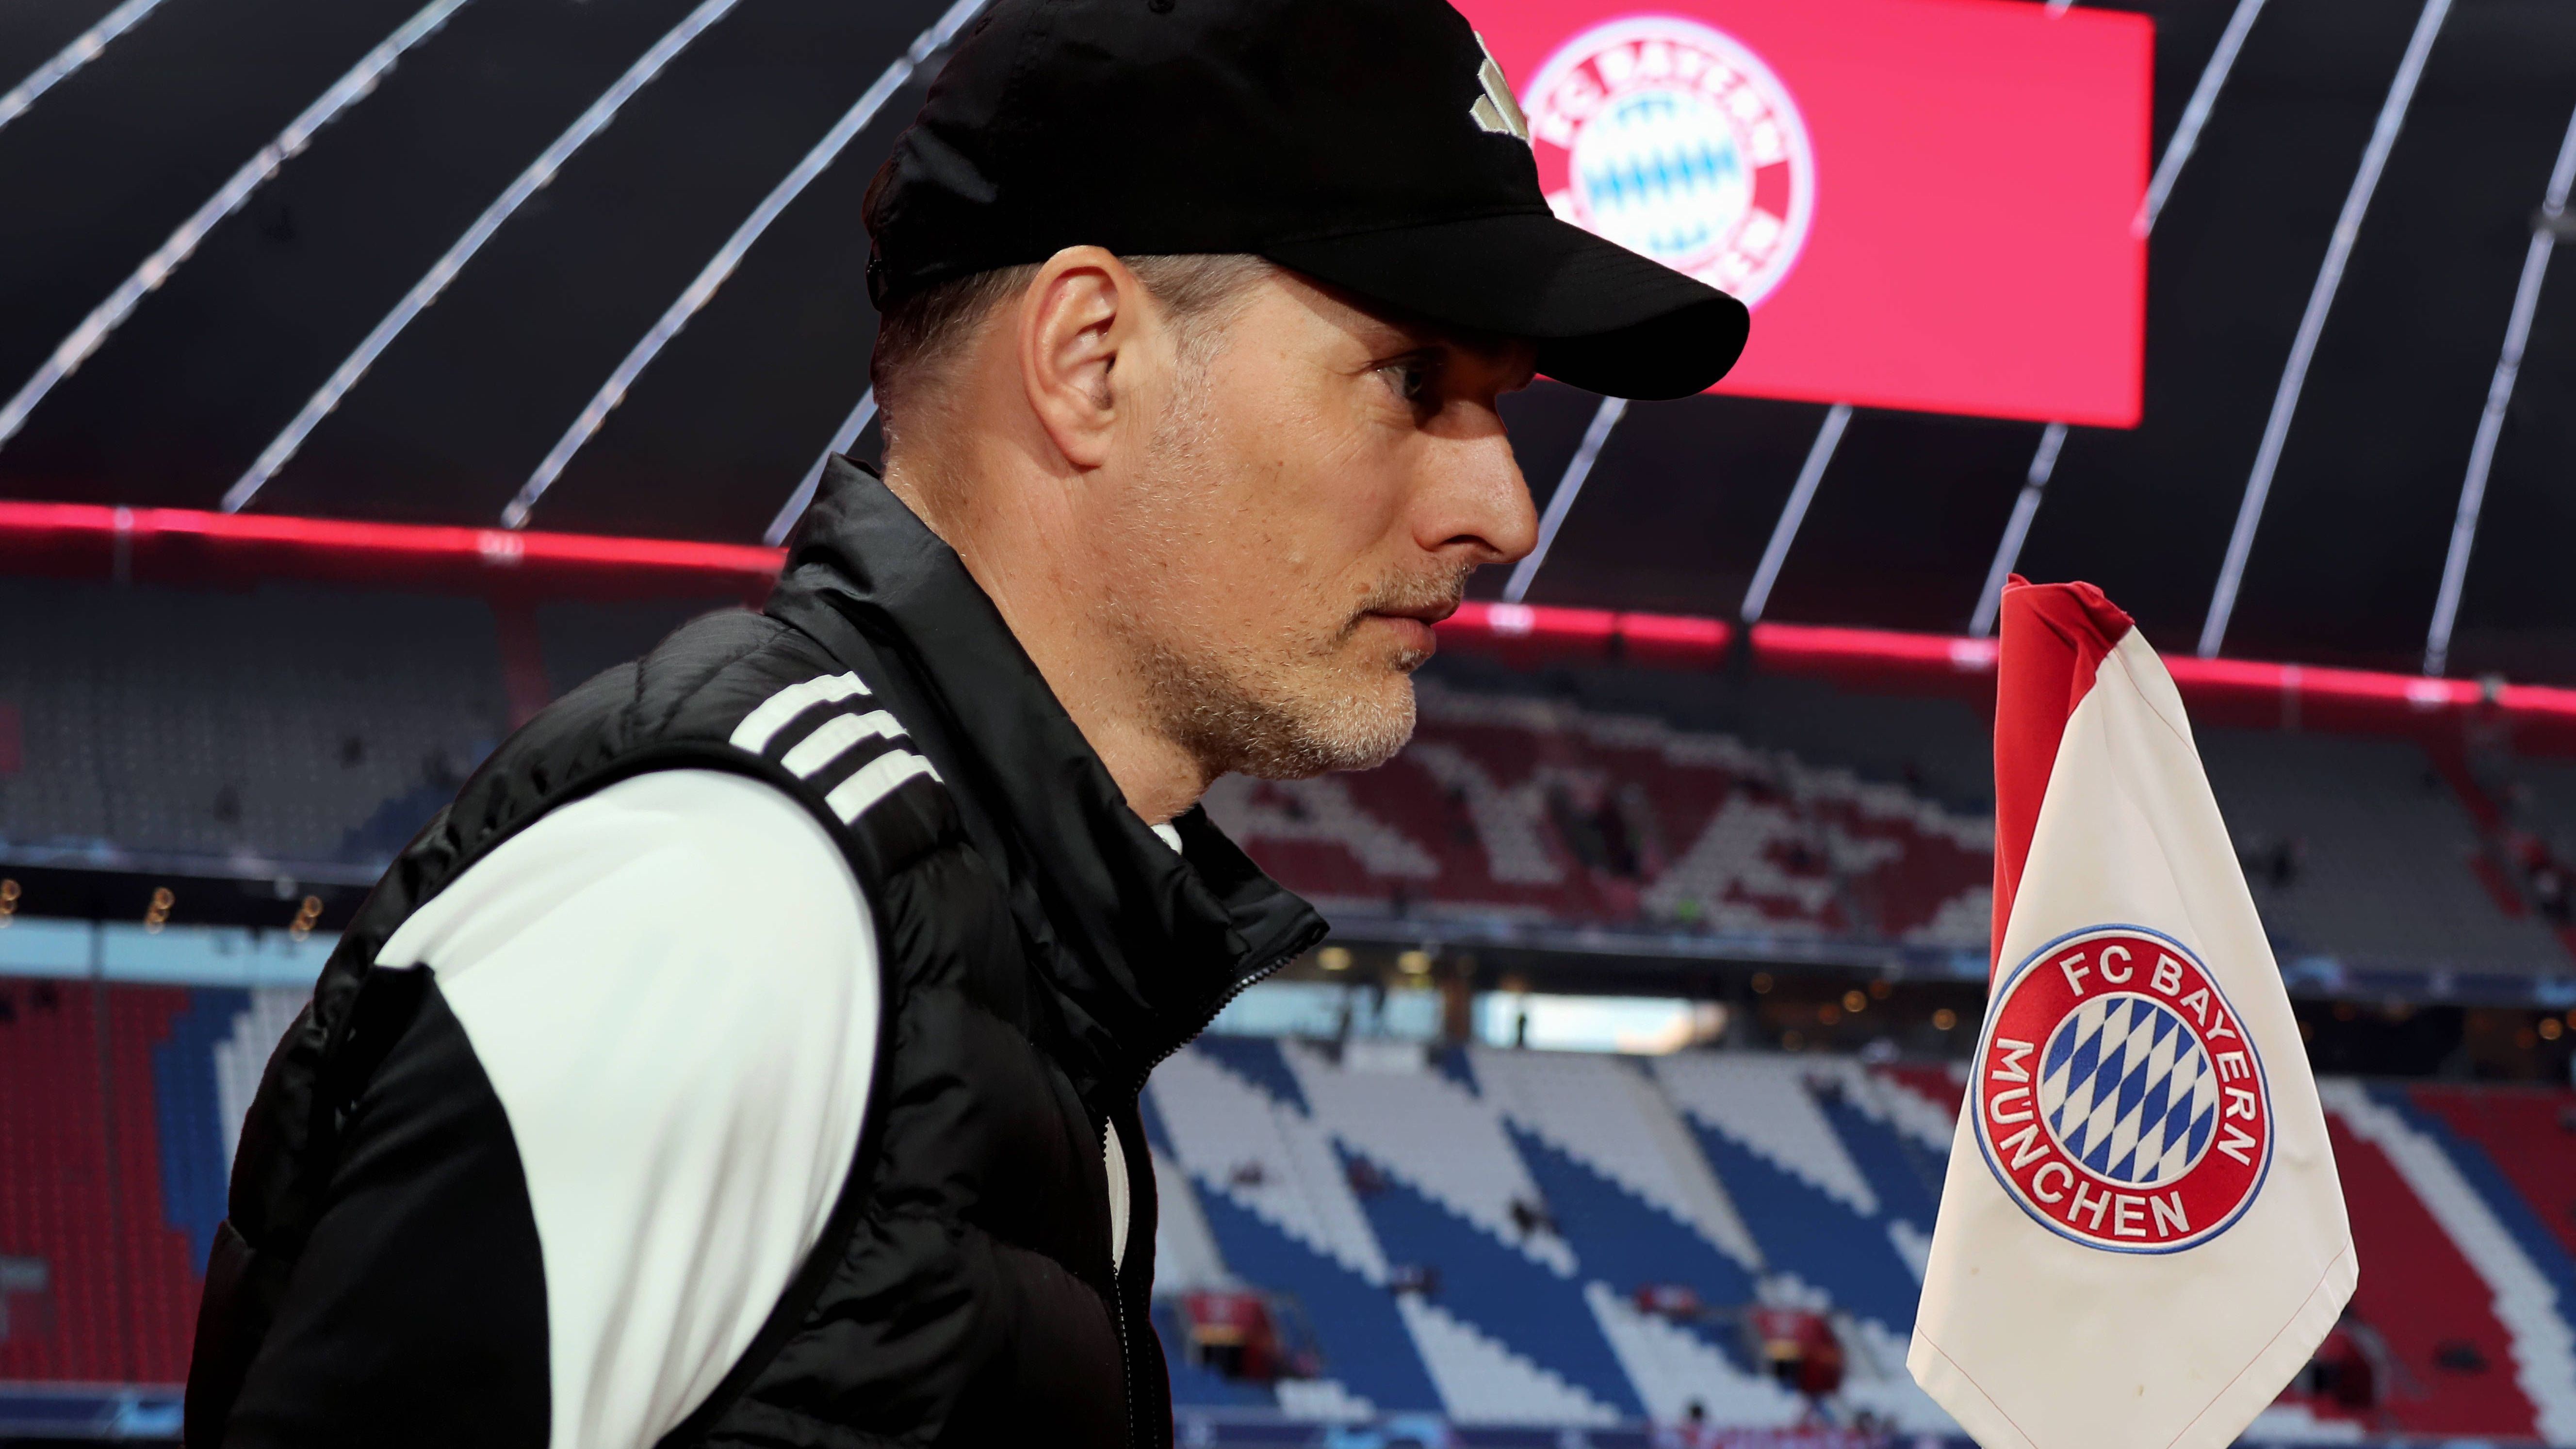 <strong>Thomas Tuchel wird noch vor dem Saisonende entlassen</strong><br>Noch sind es sieben Spieltage in der Bundesliga. Doch wird Thomas Tuchel auch am letzten Spiel noch auf der Bayern-Bank sitzen? Eher nicht. Denn nach dem uninspirierten Auftritt beim 0:2 gegen Borussia Dortmund wird der Bayern-Coach einmal mehr heftig kritisiert.